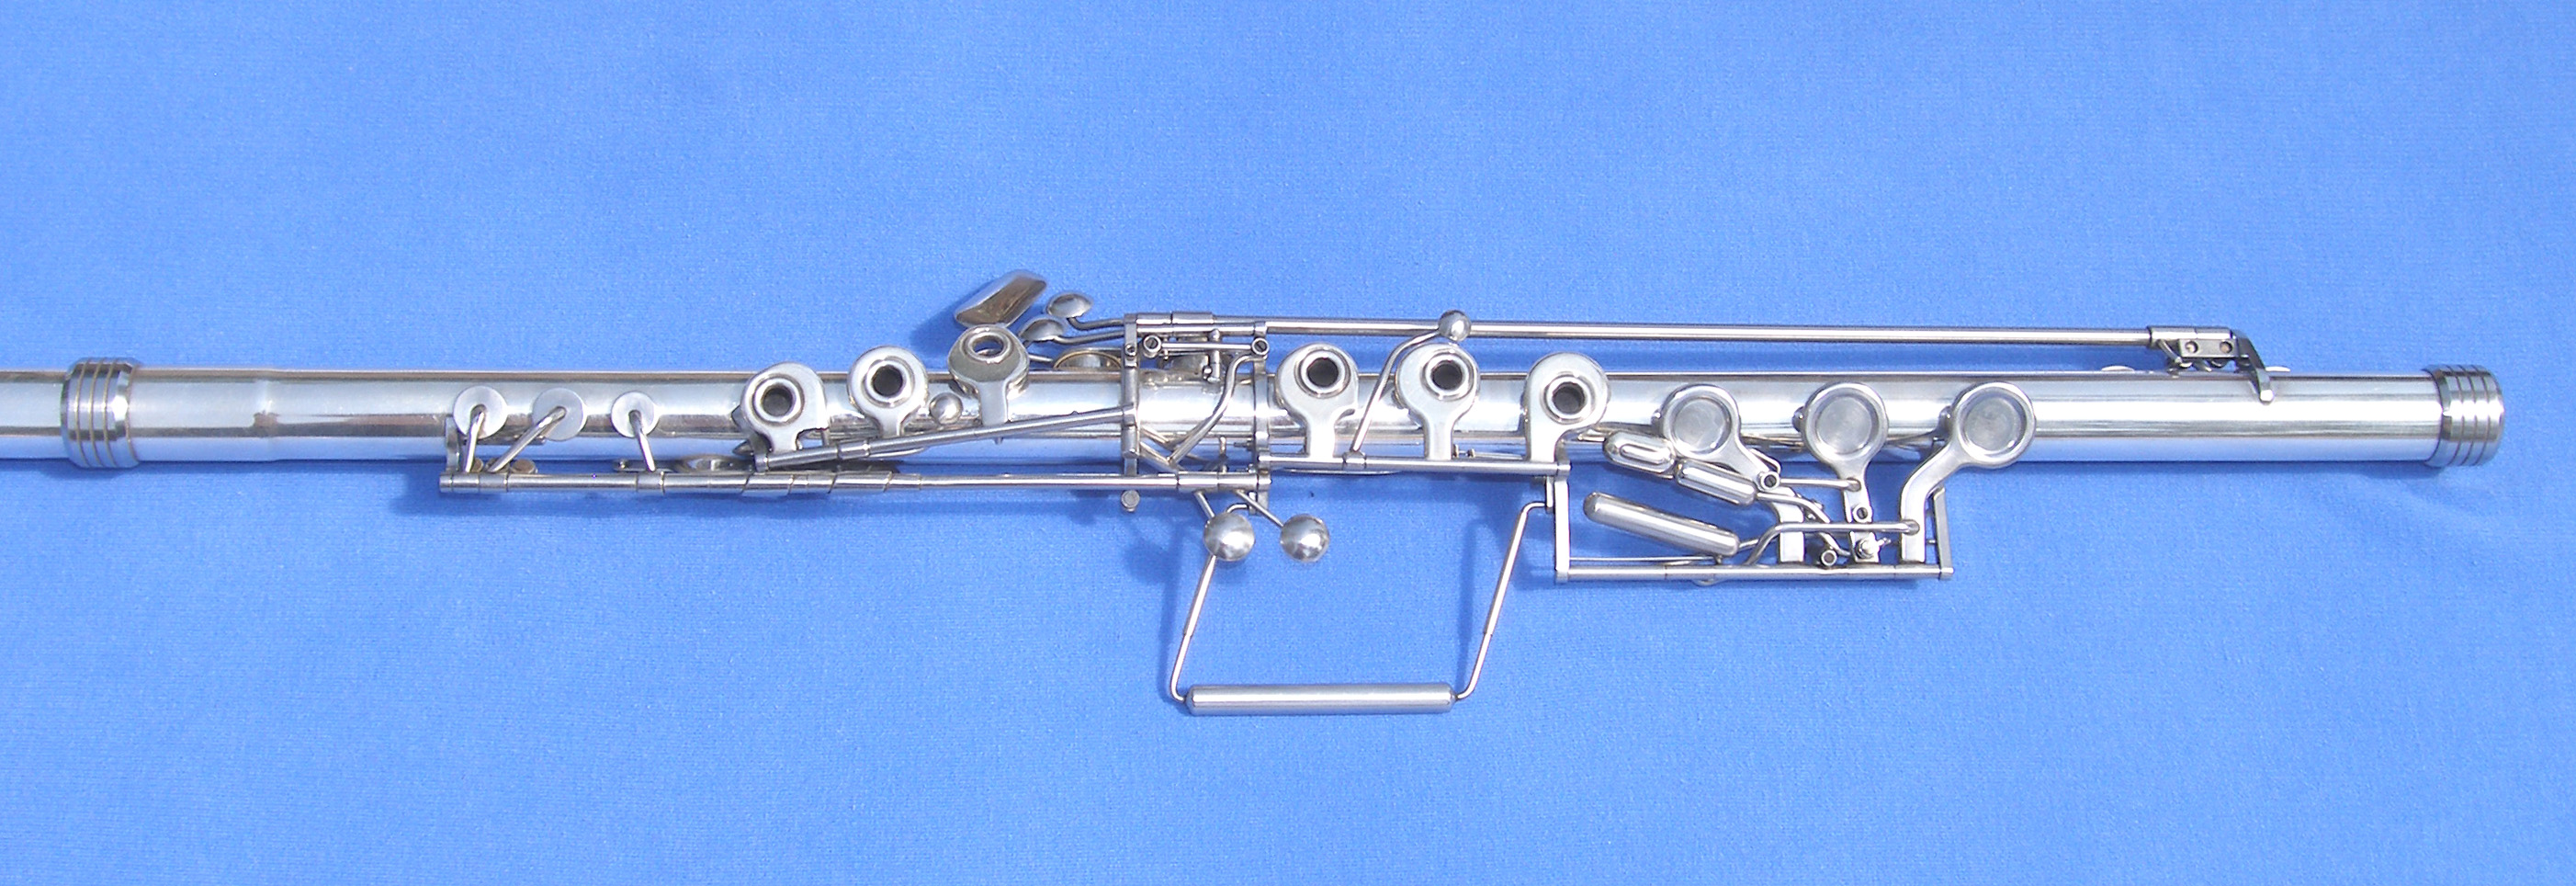 e flat major scale flute